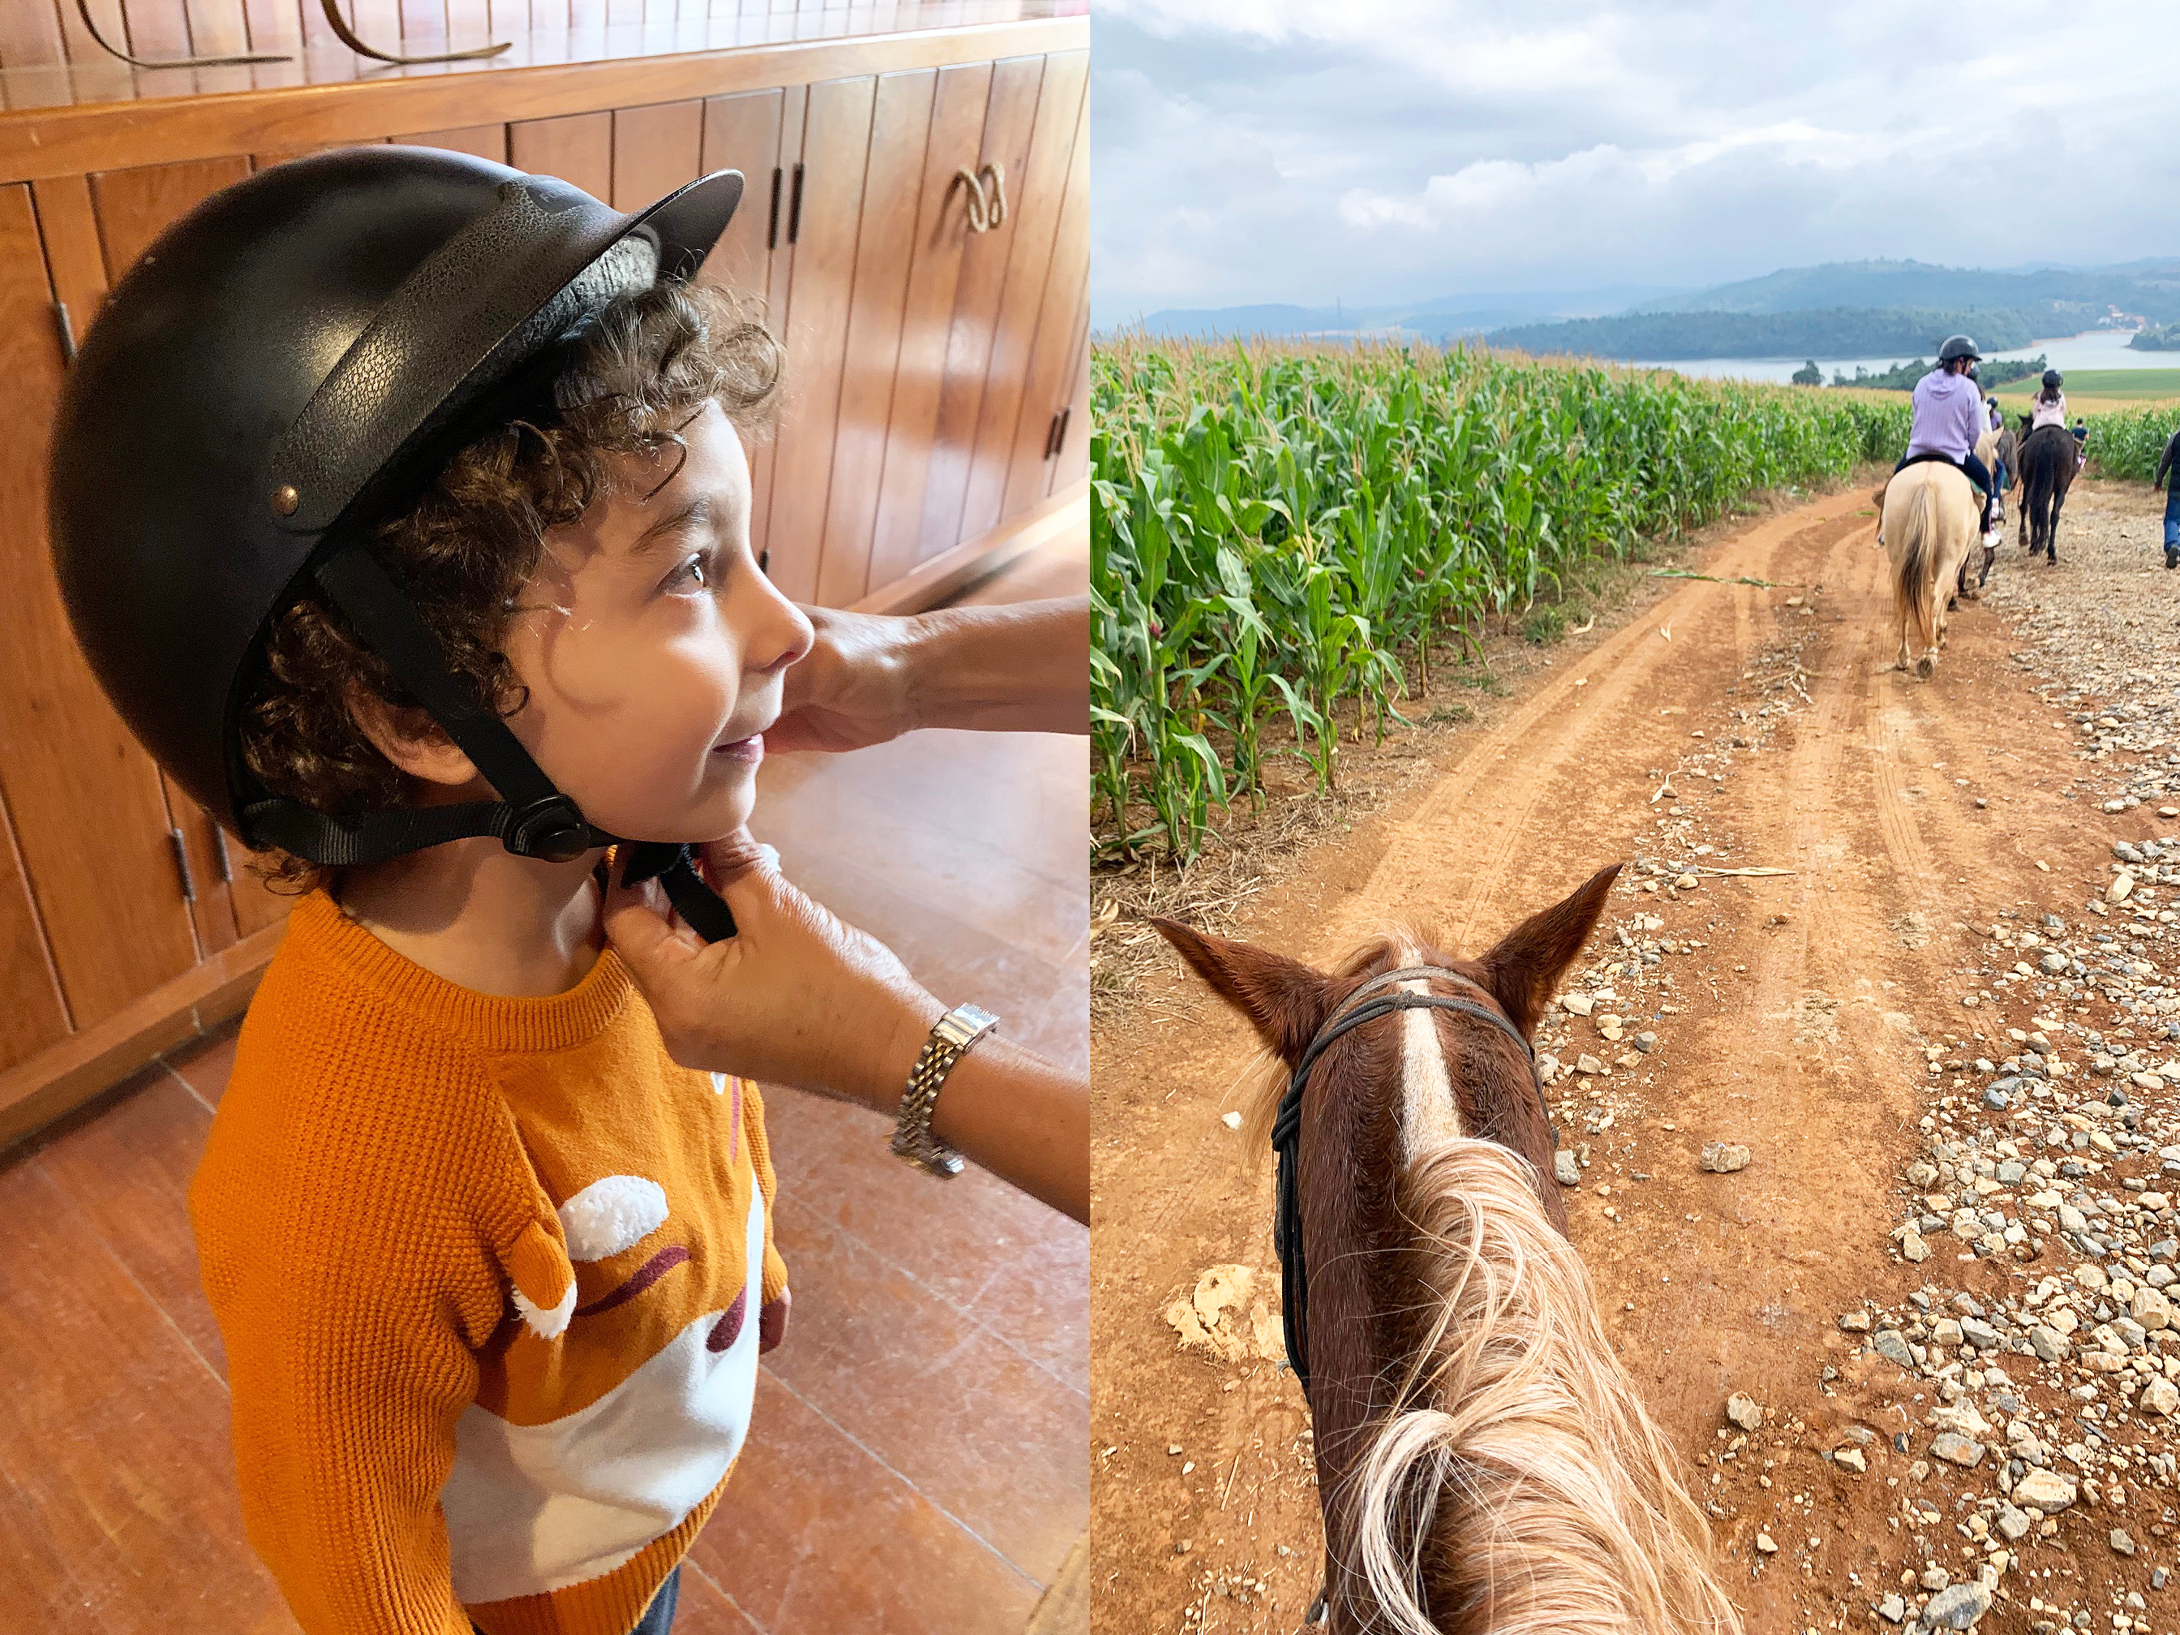 À esquerda: criança em perfil usando capacete de hipismo. À direita: cavalos galopando em uma estrada de terra do ponto de vista de uma pessoa montada em um deles